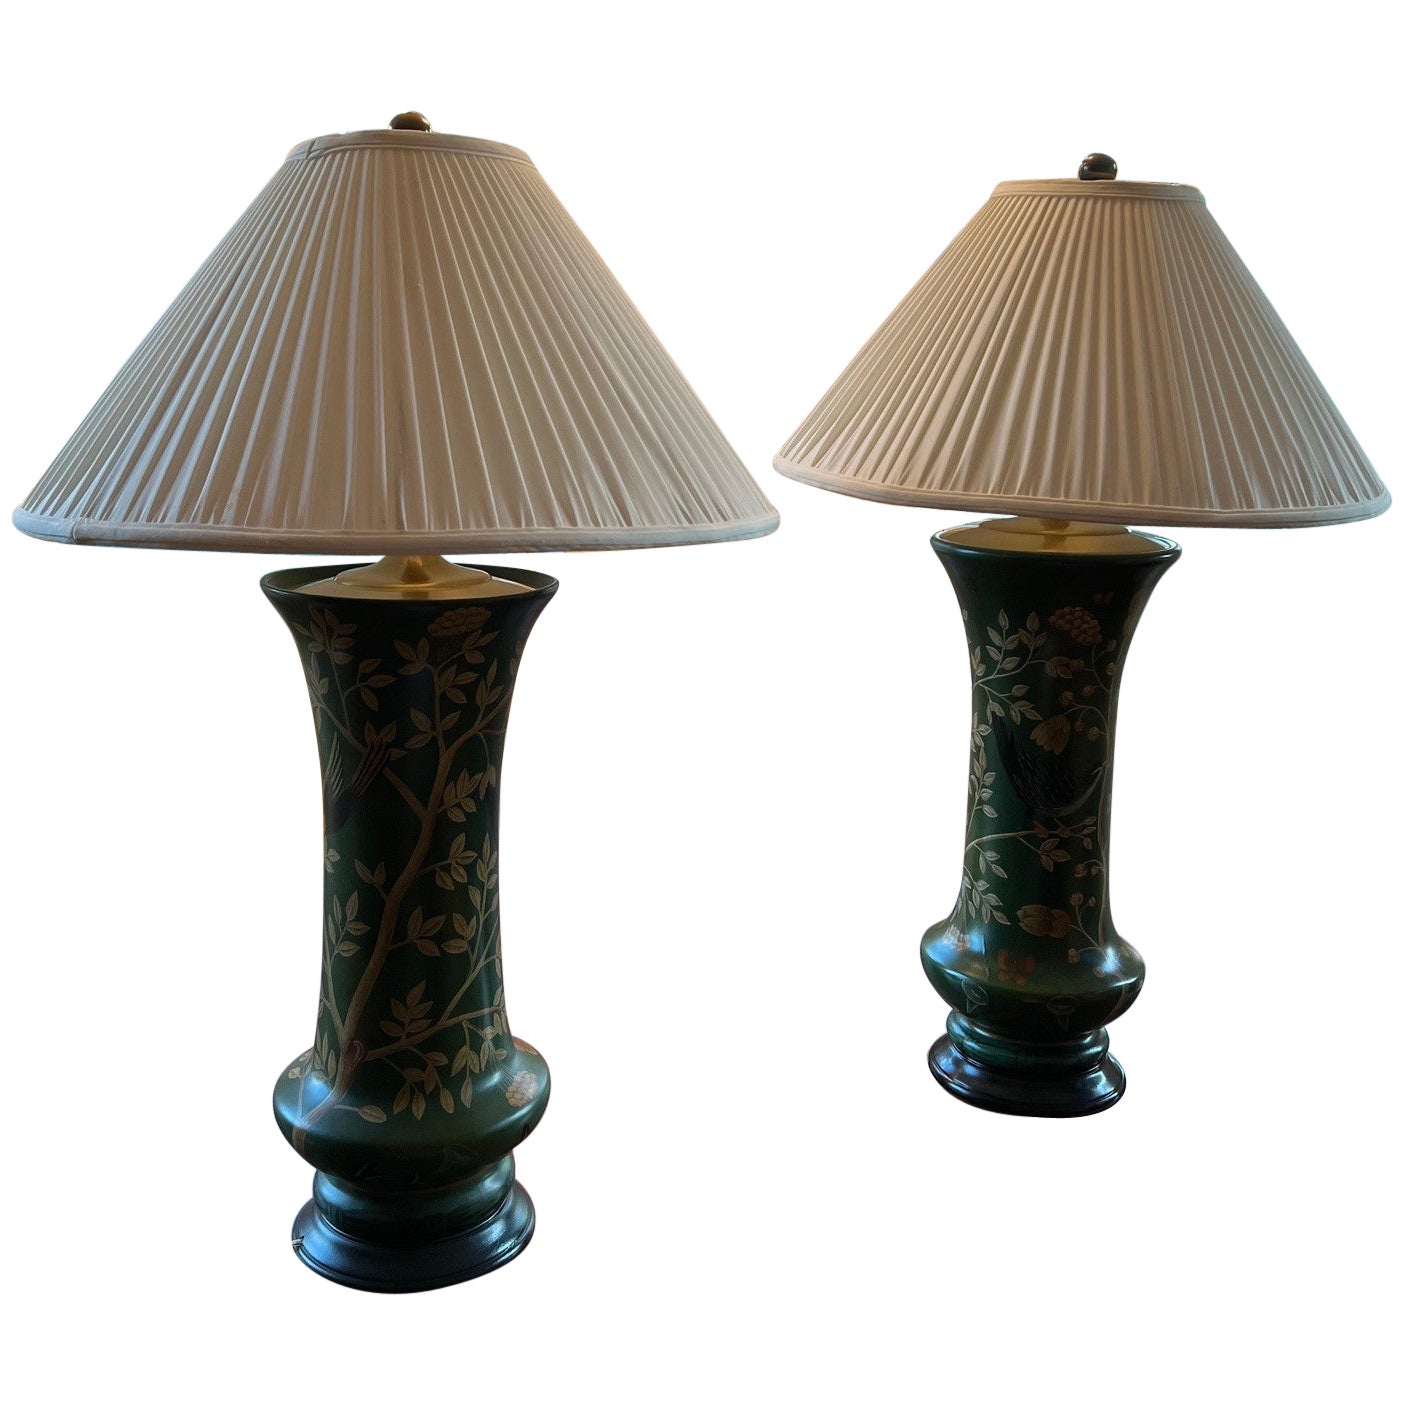 Proche Paire de lampes de table de style Asian Style peintes à la main - Schumacher Furnishings